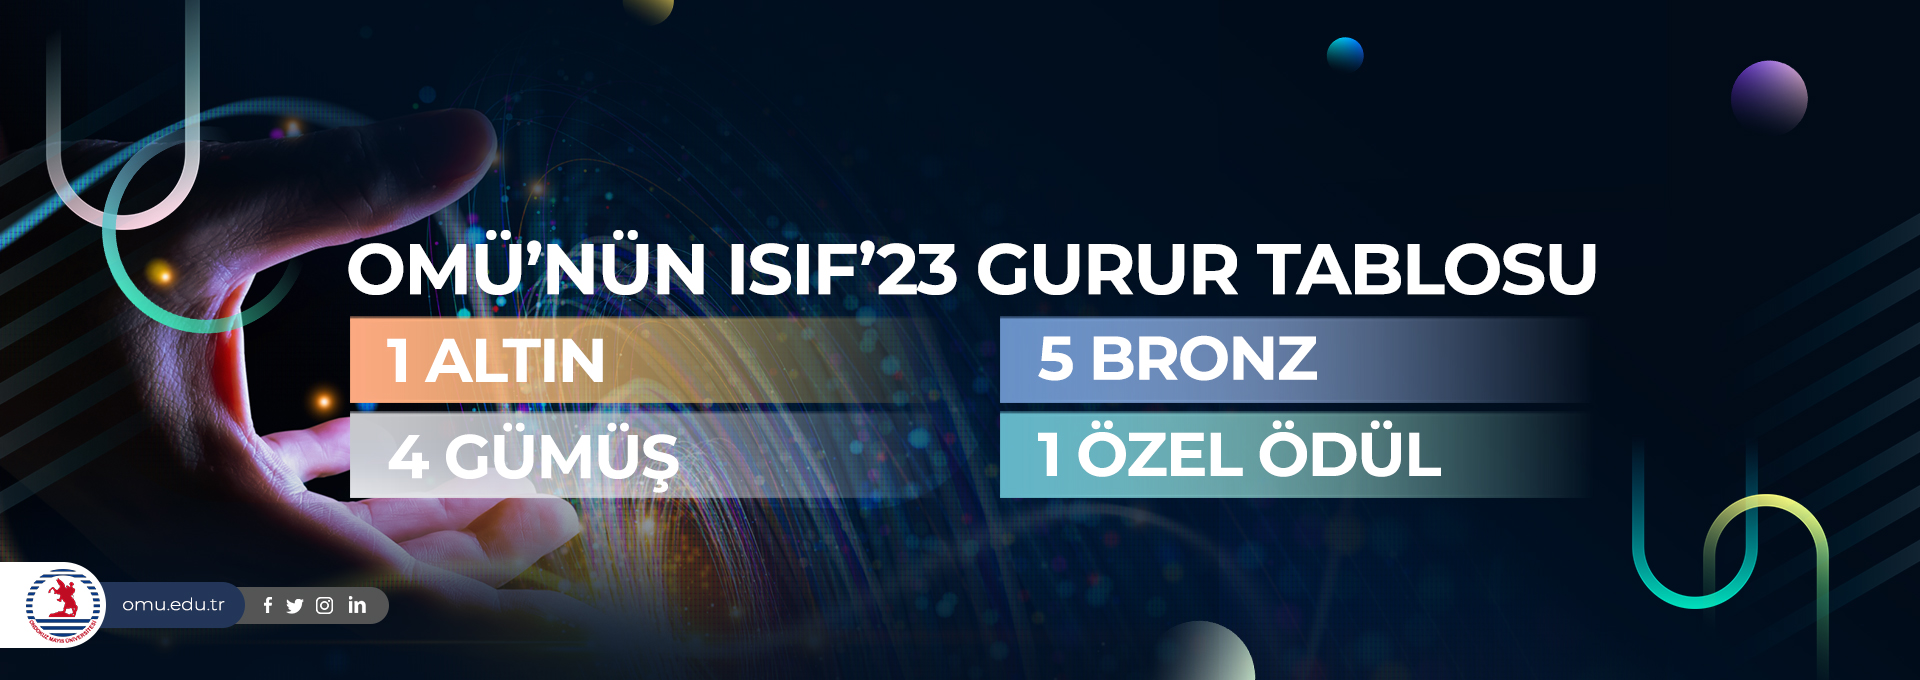 ISIF’23’te OMÜ’nün Gurur Tablosu: 1 Altın, 4 Gümüş, 5 Bronz ve 1 Özel Ödül